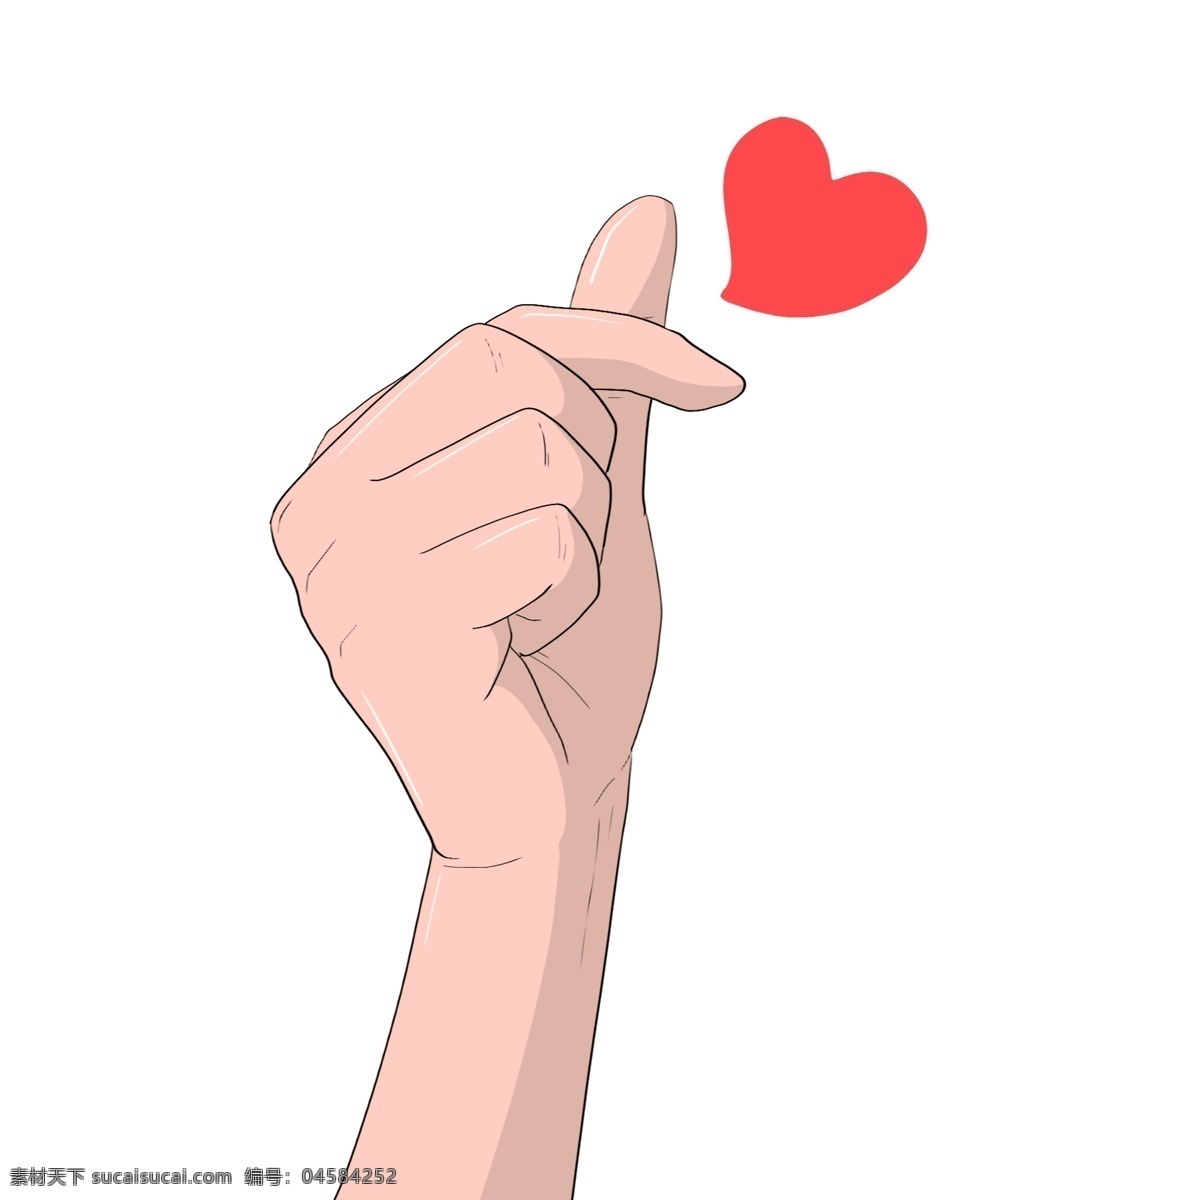 手绘 告白 心 手势 插画 红色的爱心 表白的手势 卡通插画 手绘手势插画 创意比心插画 告白的手势